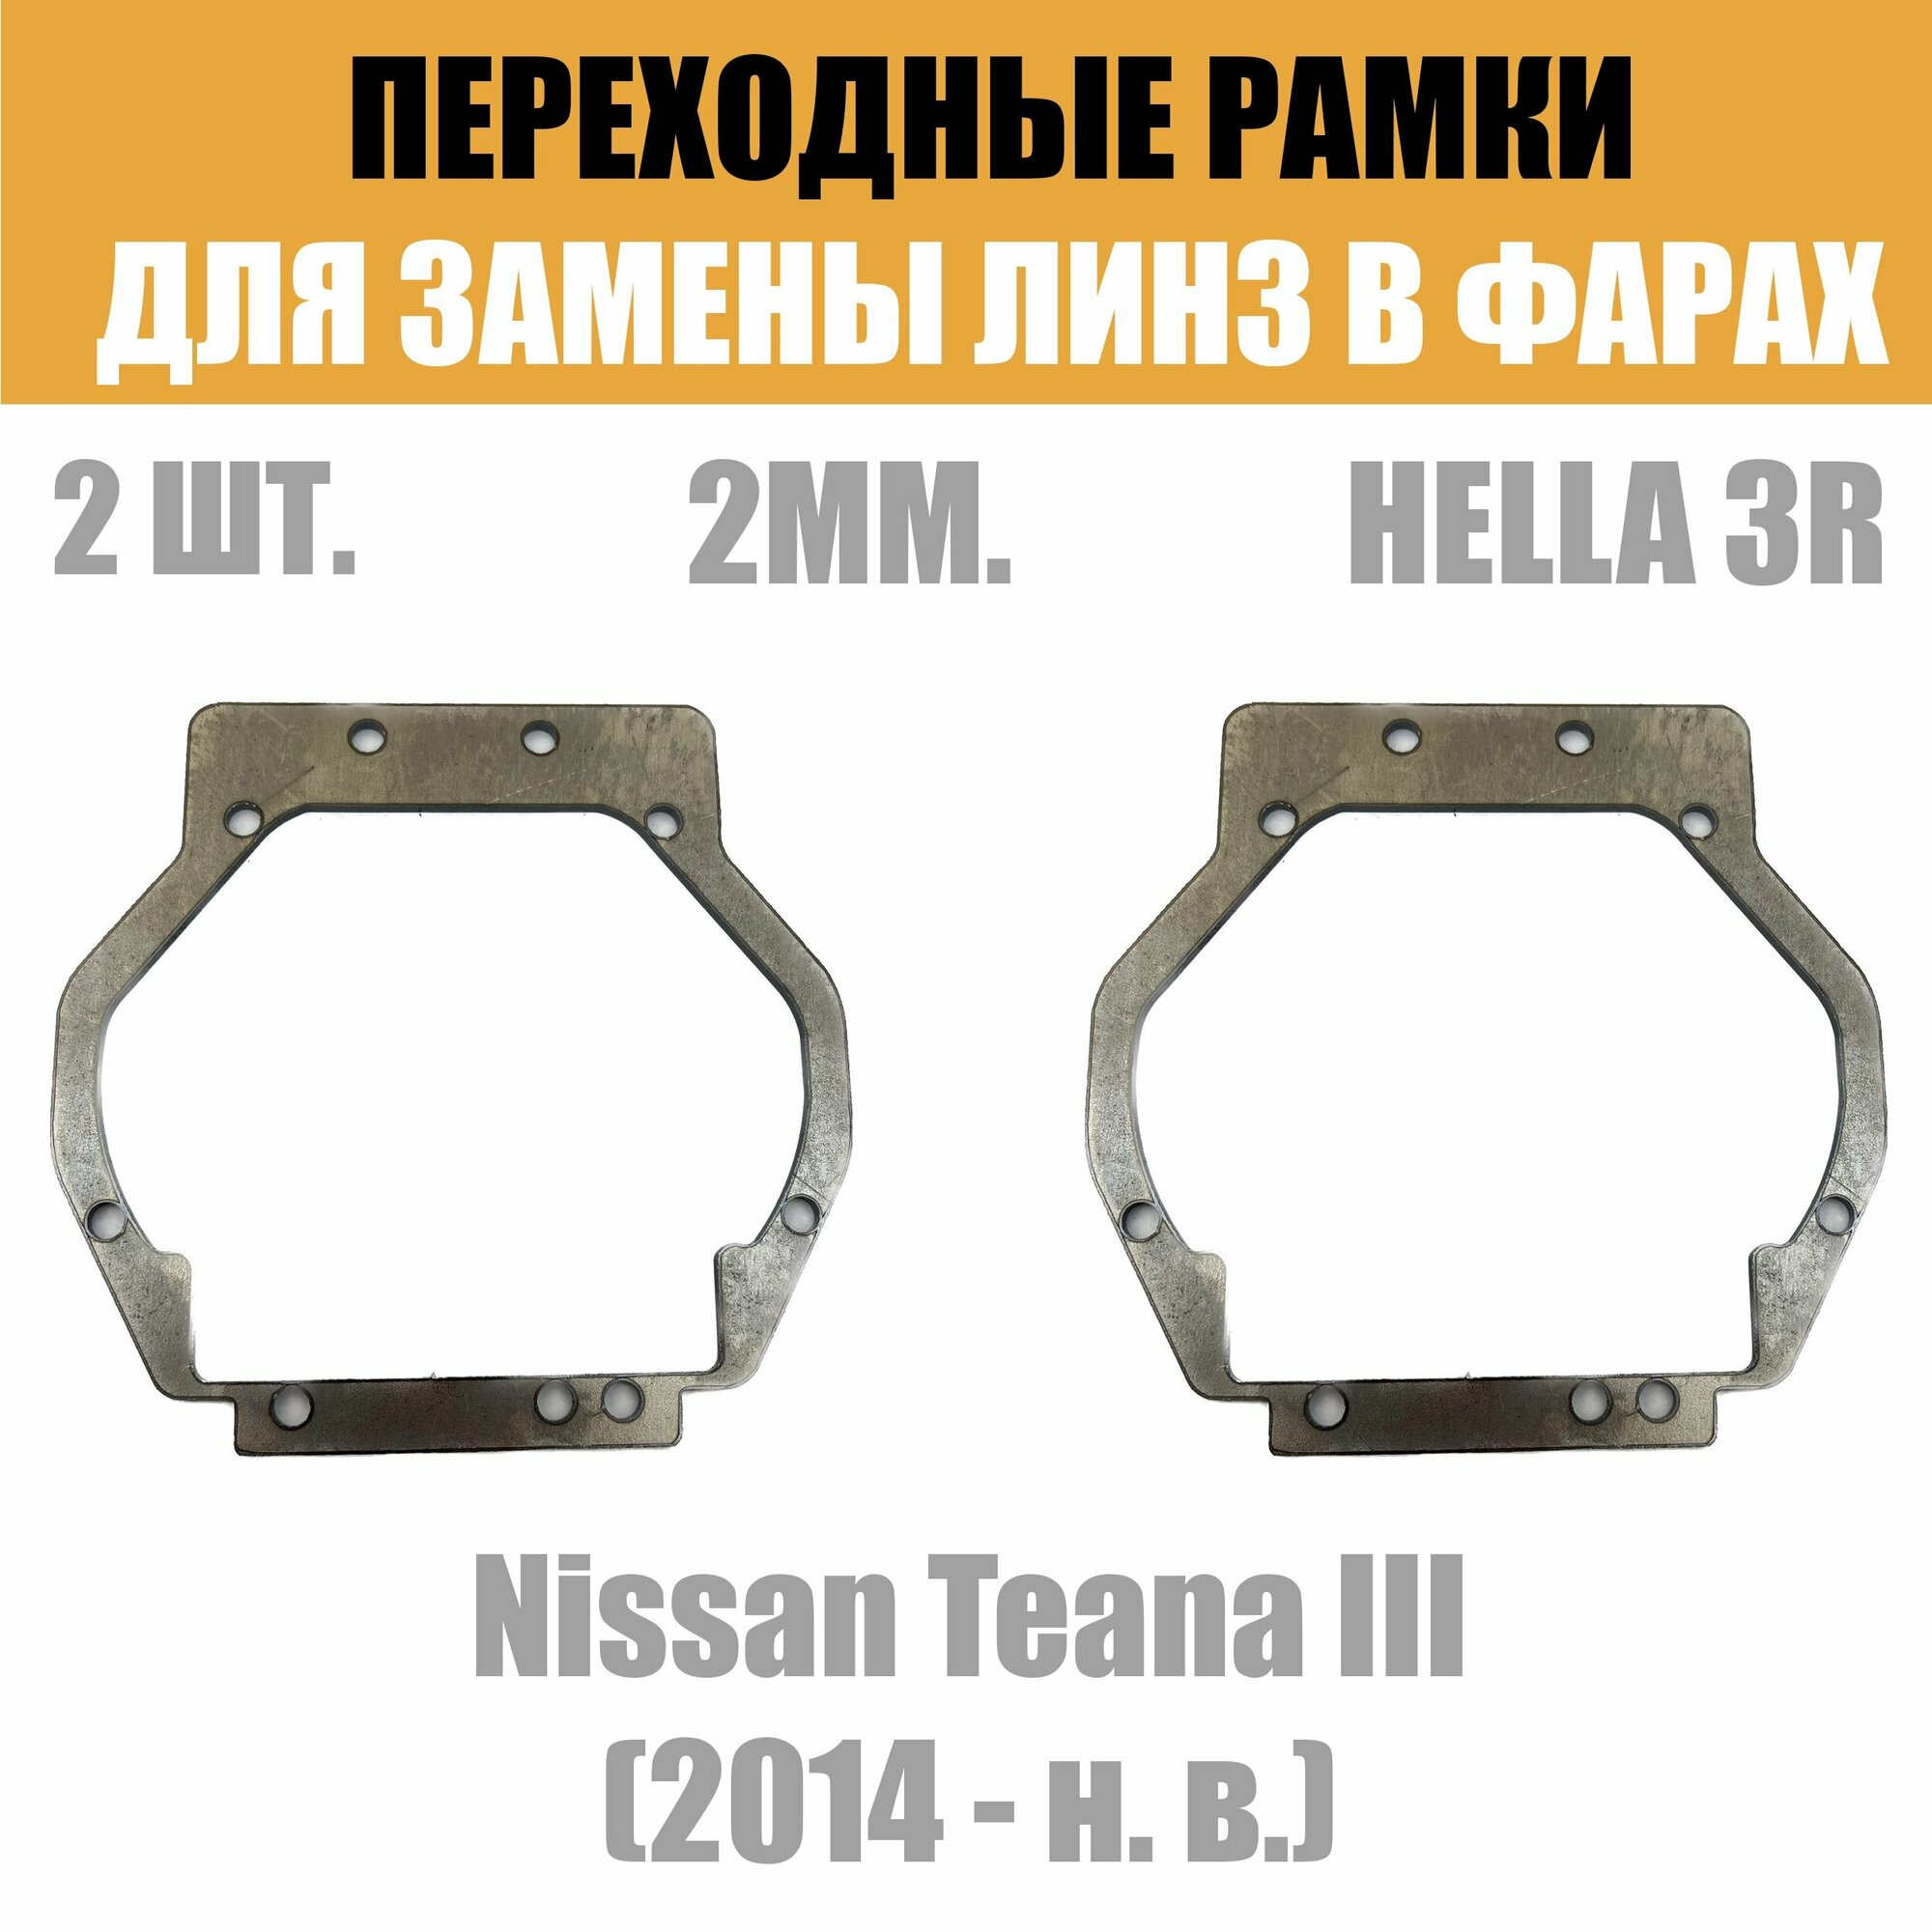 Переходные рамки для линз №32 на Nissan Teana III (2014 - н. в.) под модуль Hella 3R/Hella 3 (Комплект 2шт)